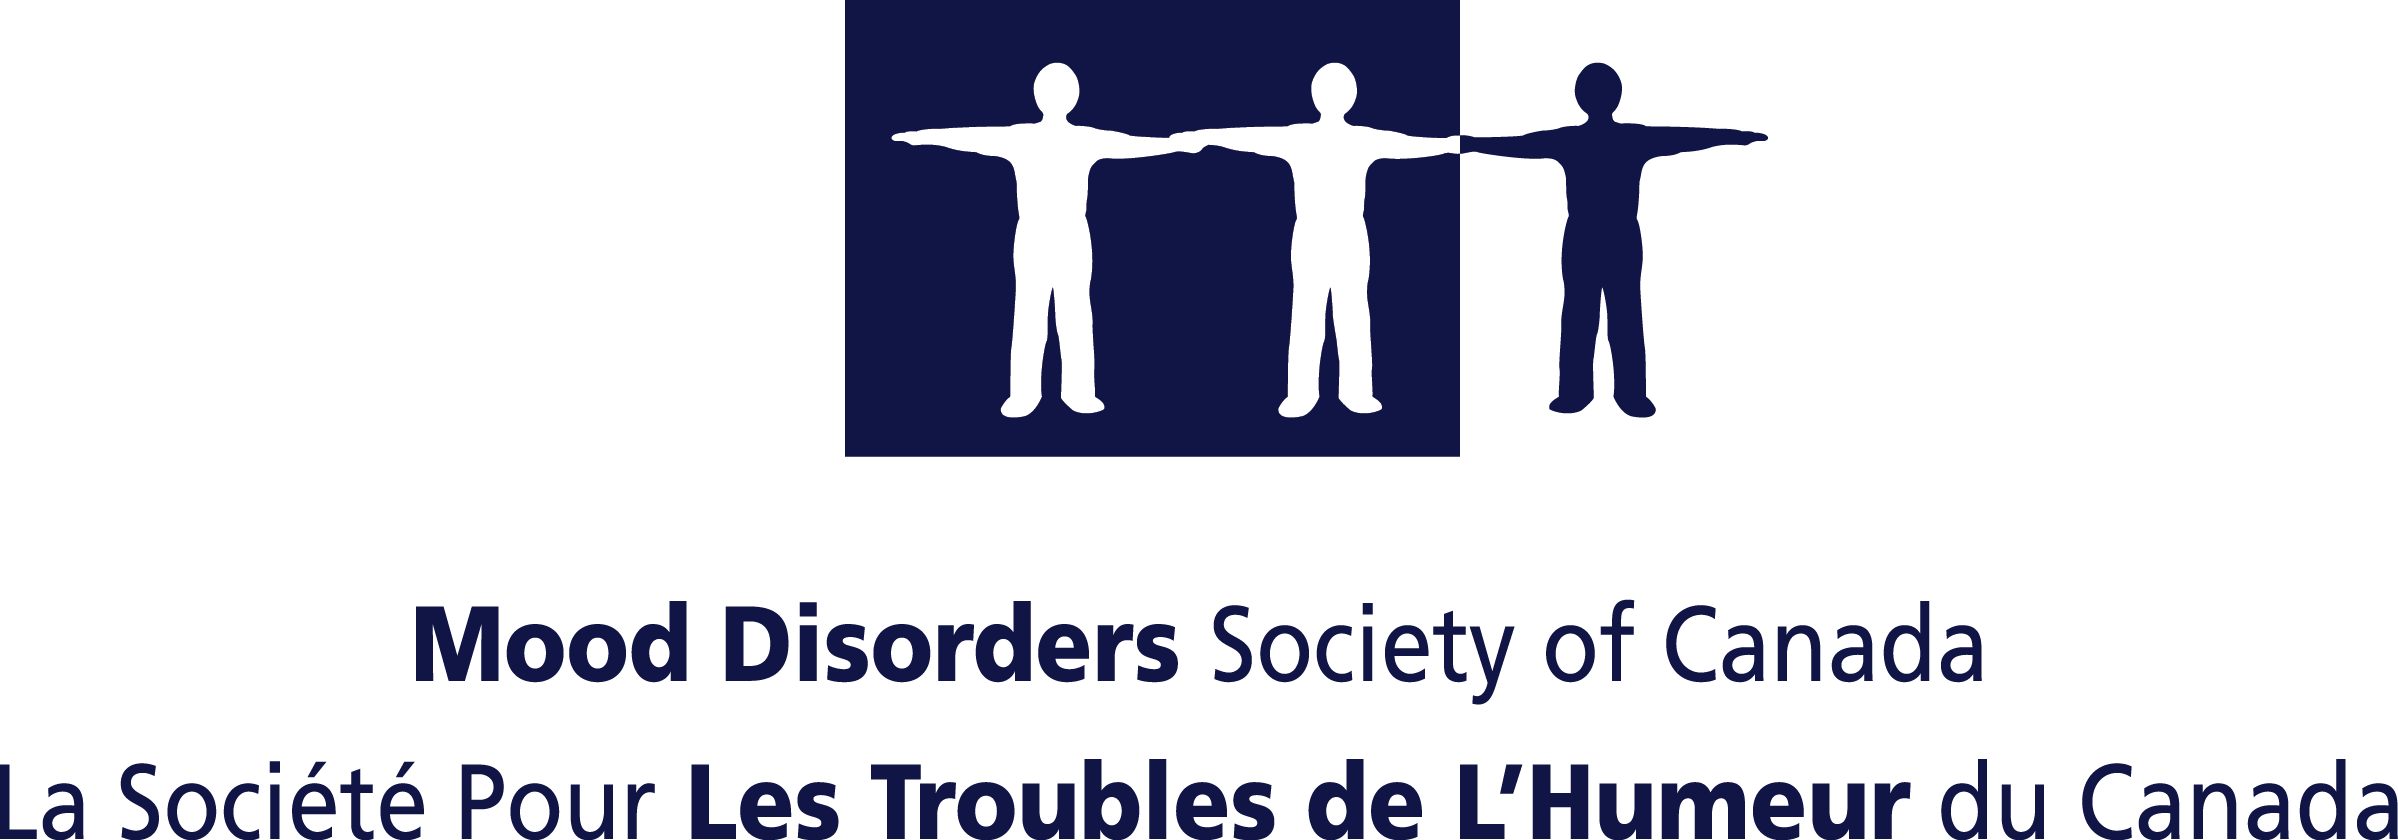 MOOD DISORDERS SOCIETY OF CANADA logo